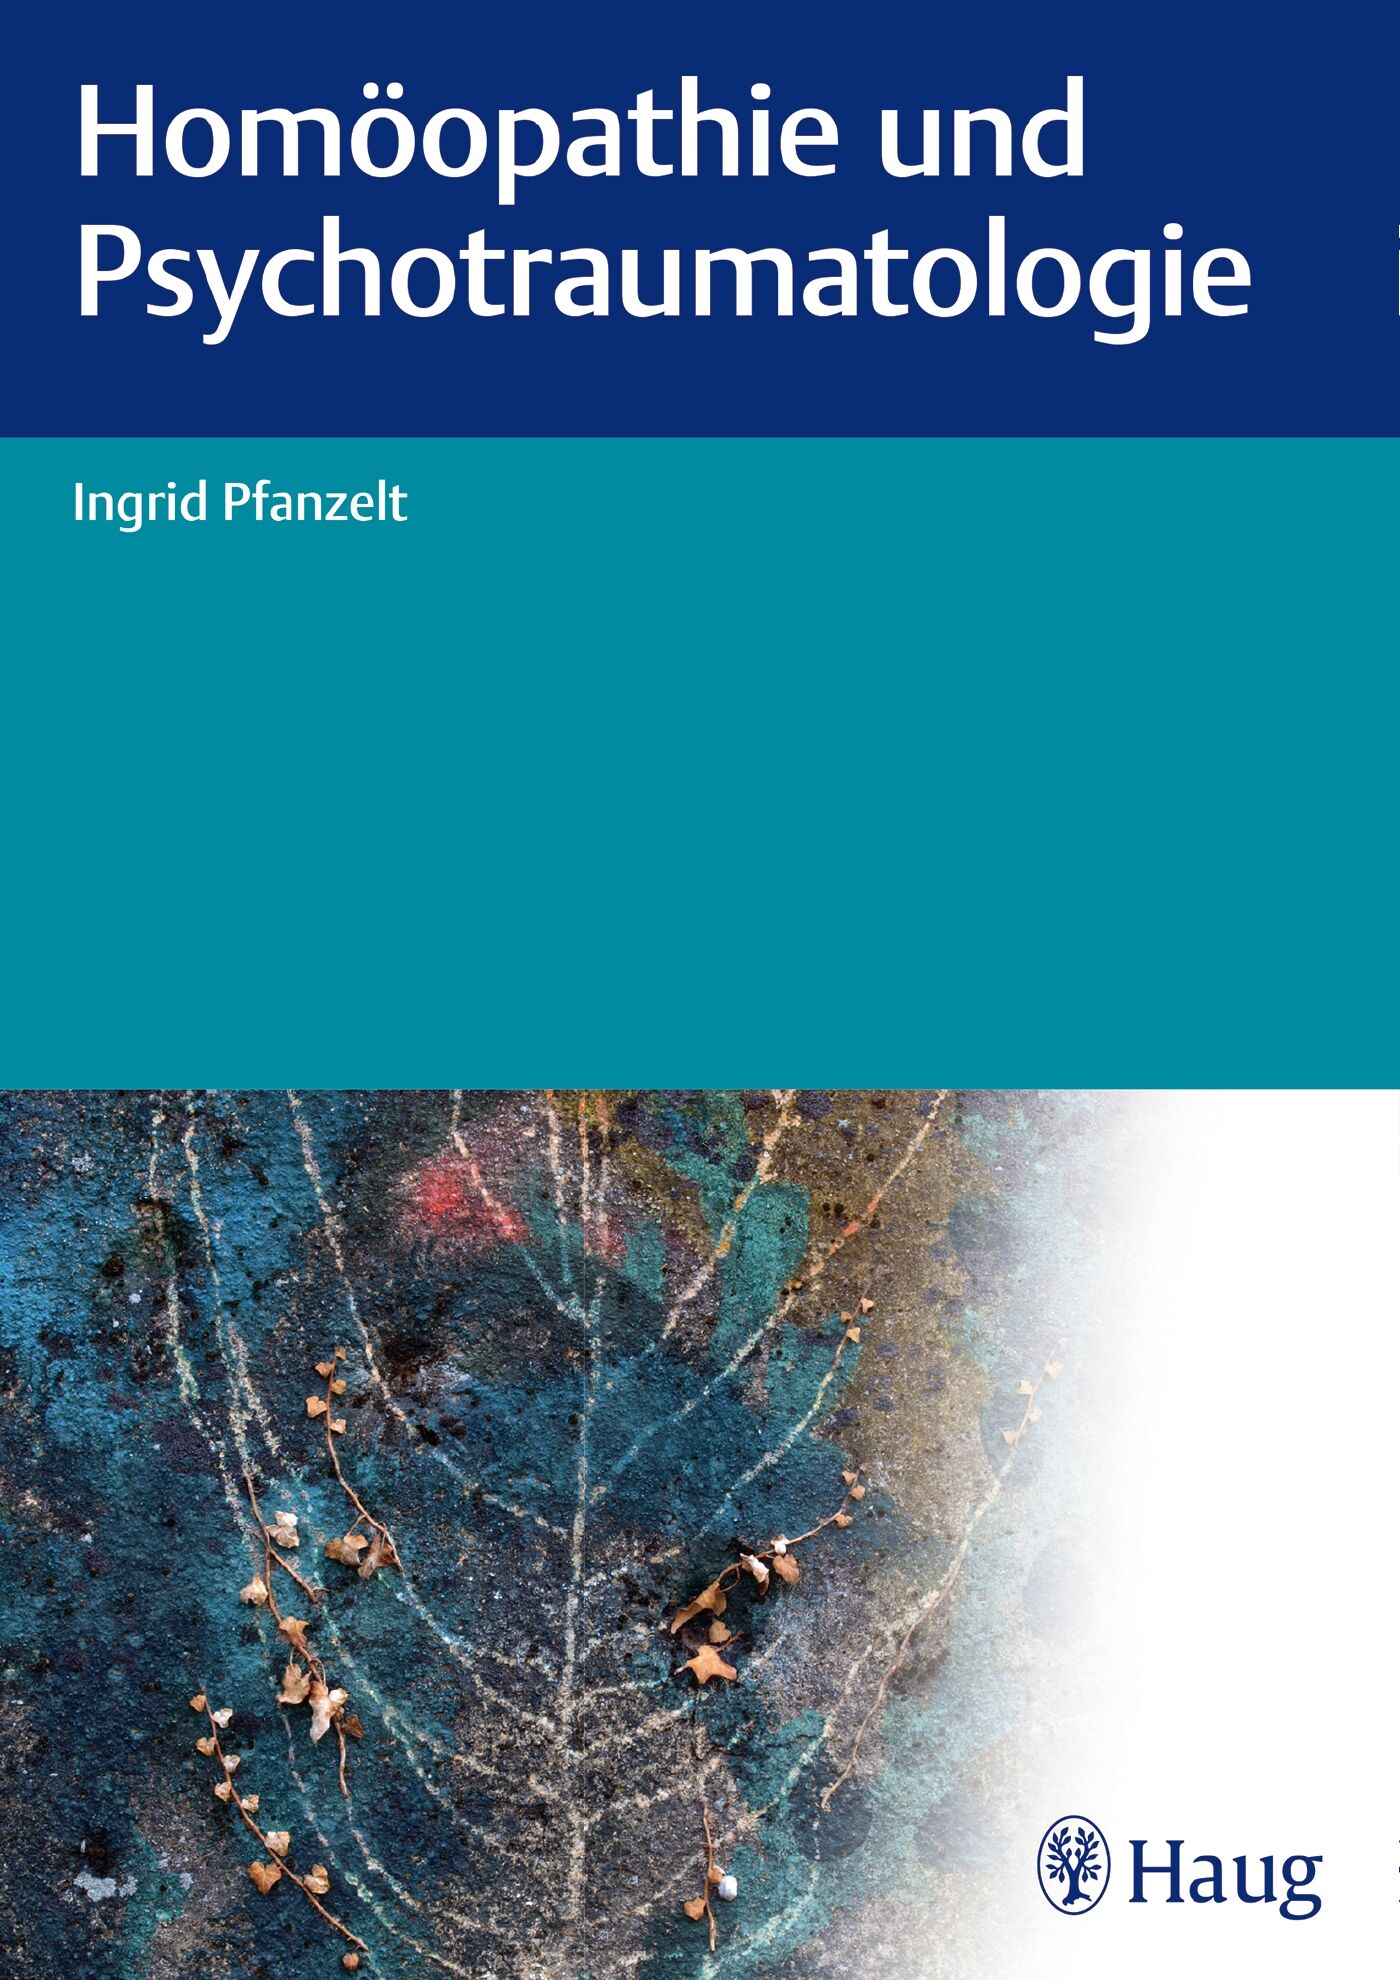 Homöopathie und Psychotraumatologie, 9783830476603